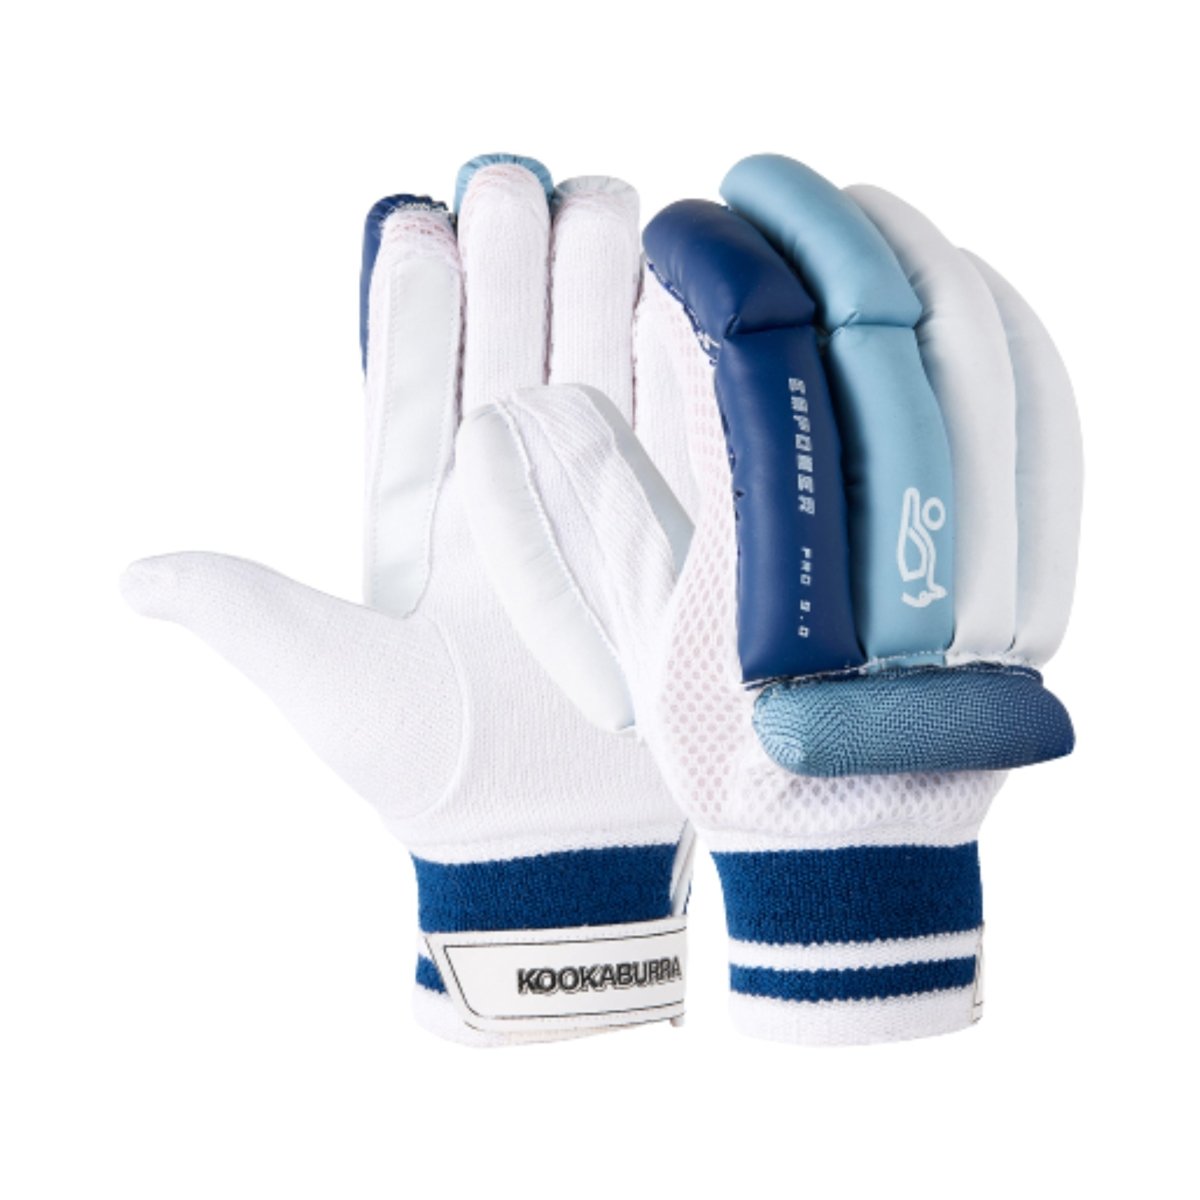 Kookaburra Empower Pro 9.0 Cricket Batting Gloves Junior - Acrux Sports